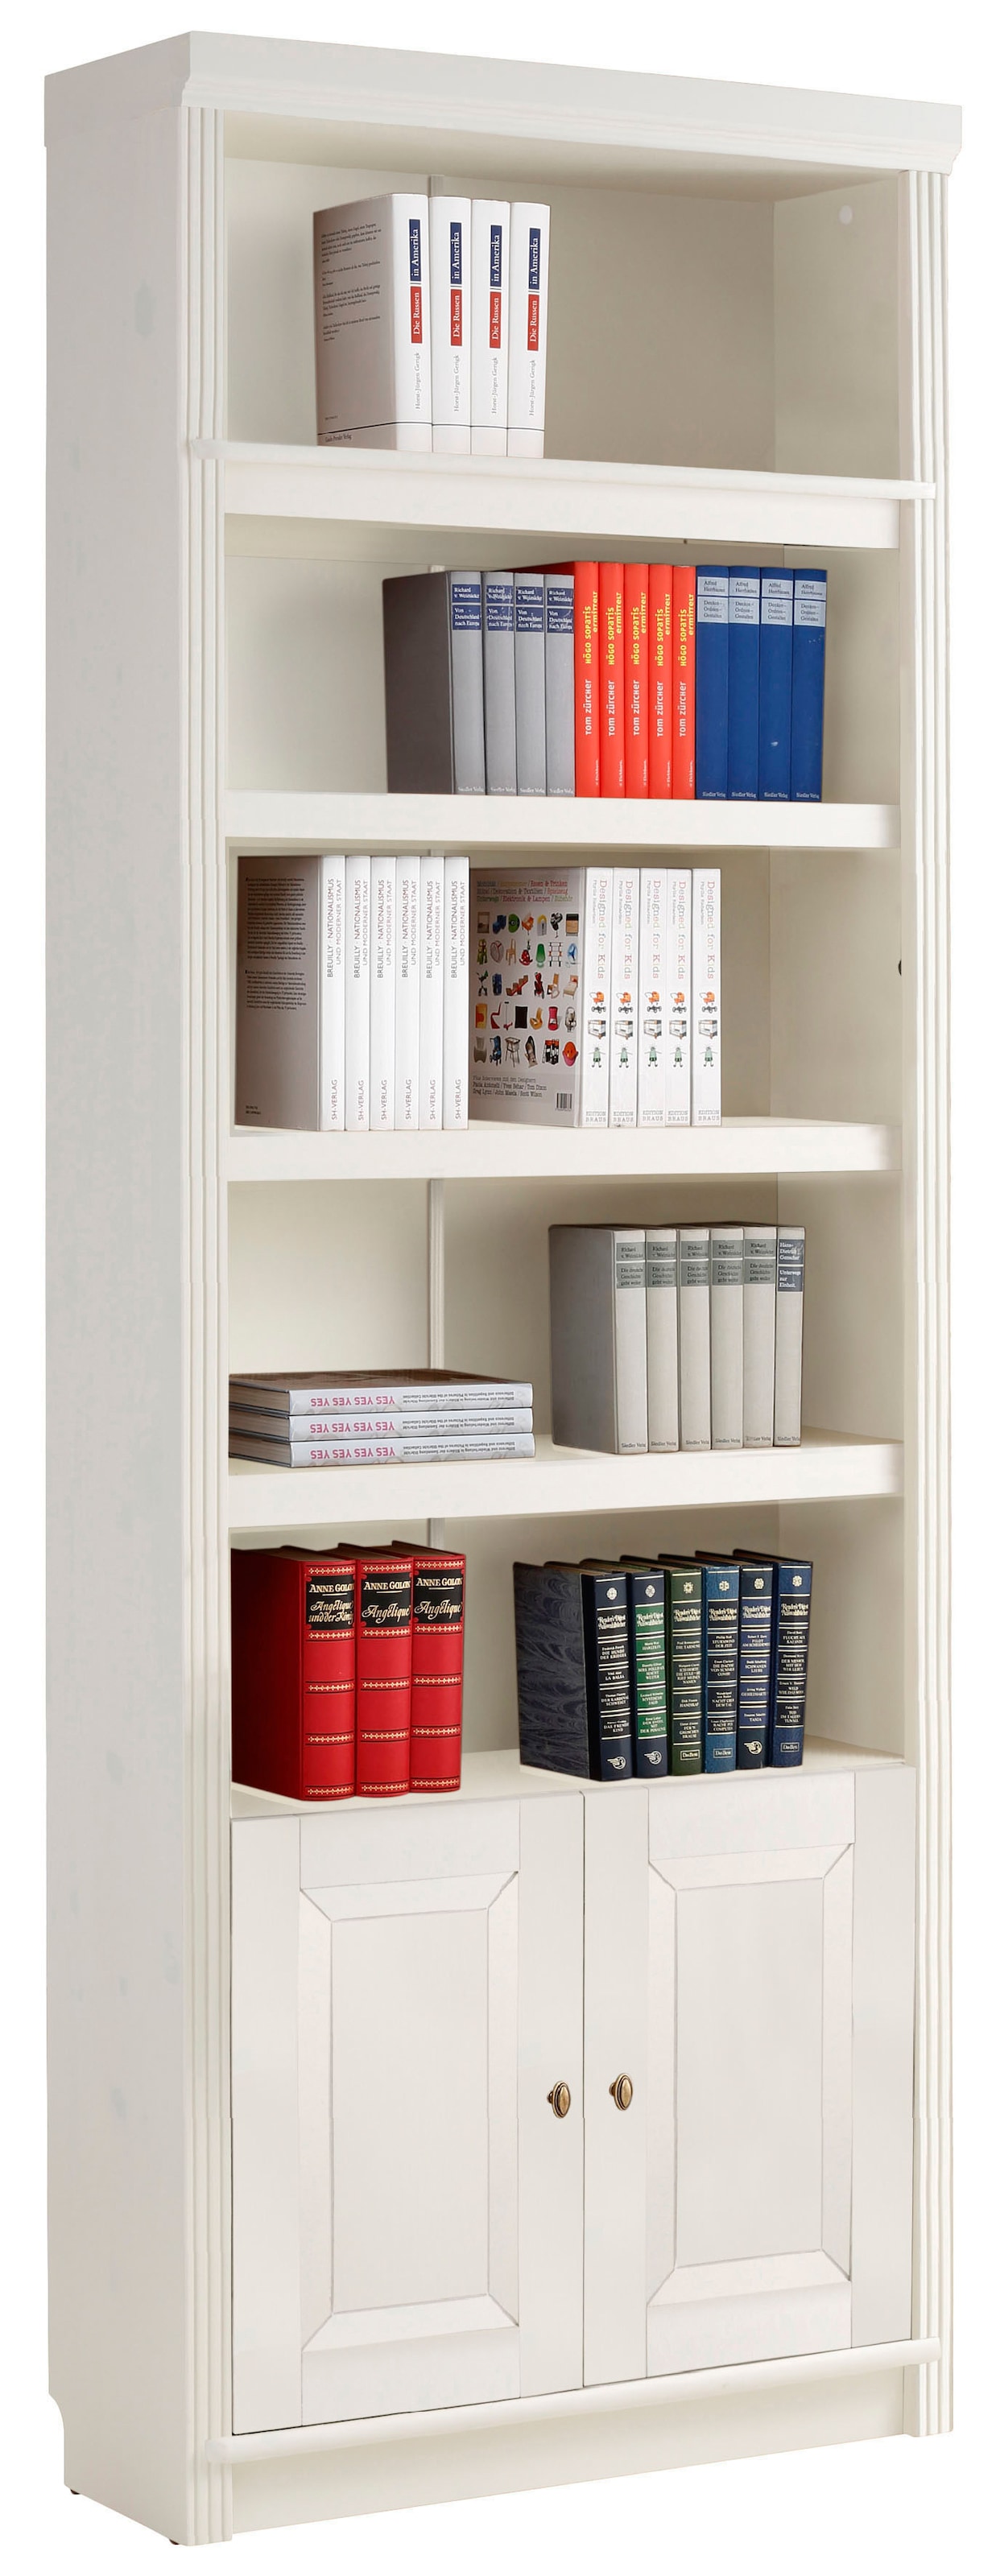 Auswahl Bücherregal: Ackermann | zur Tipps